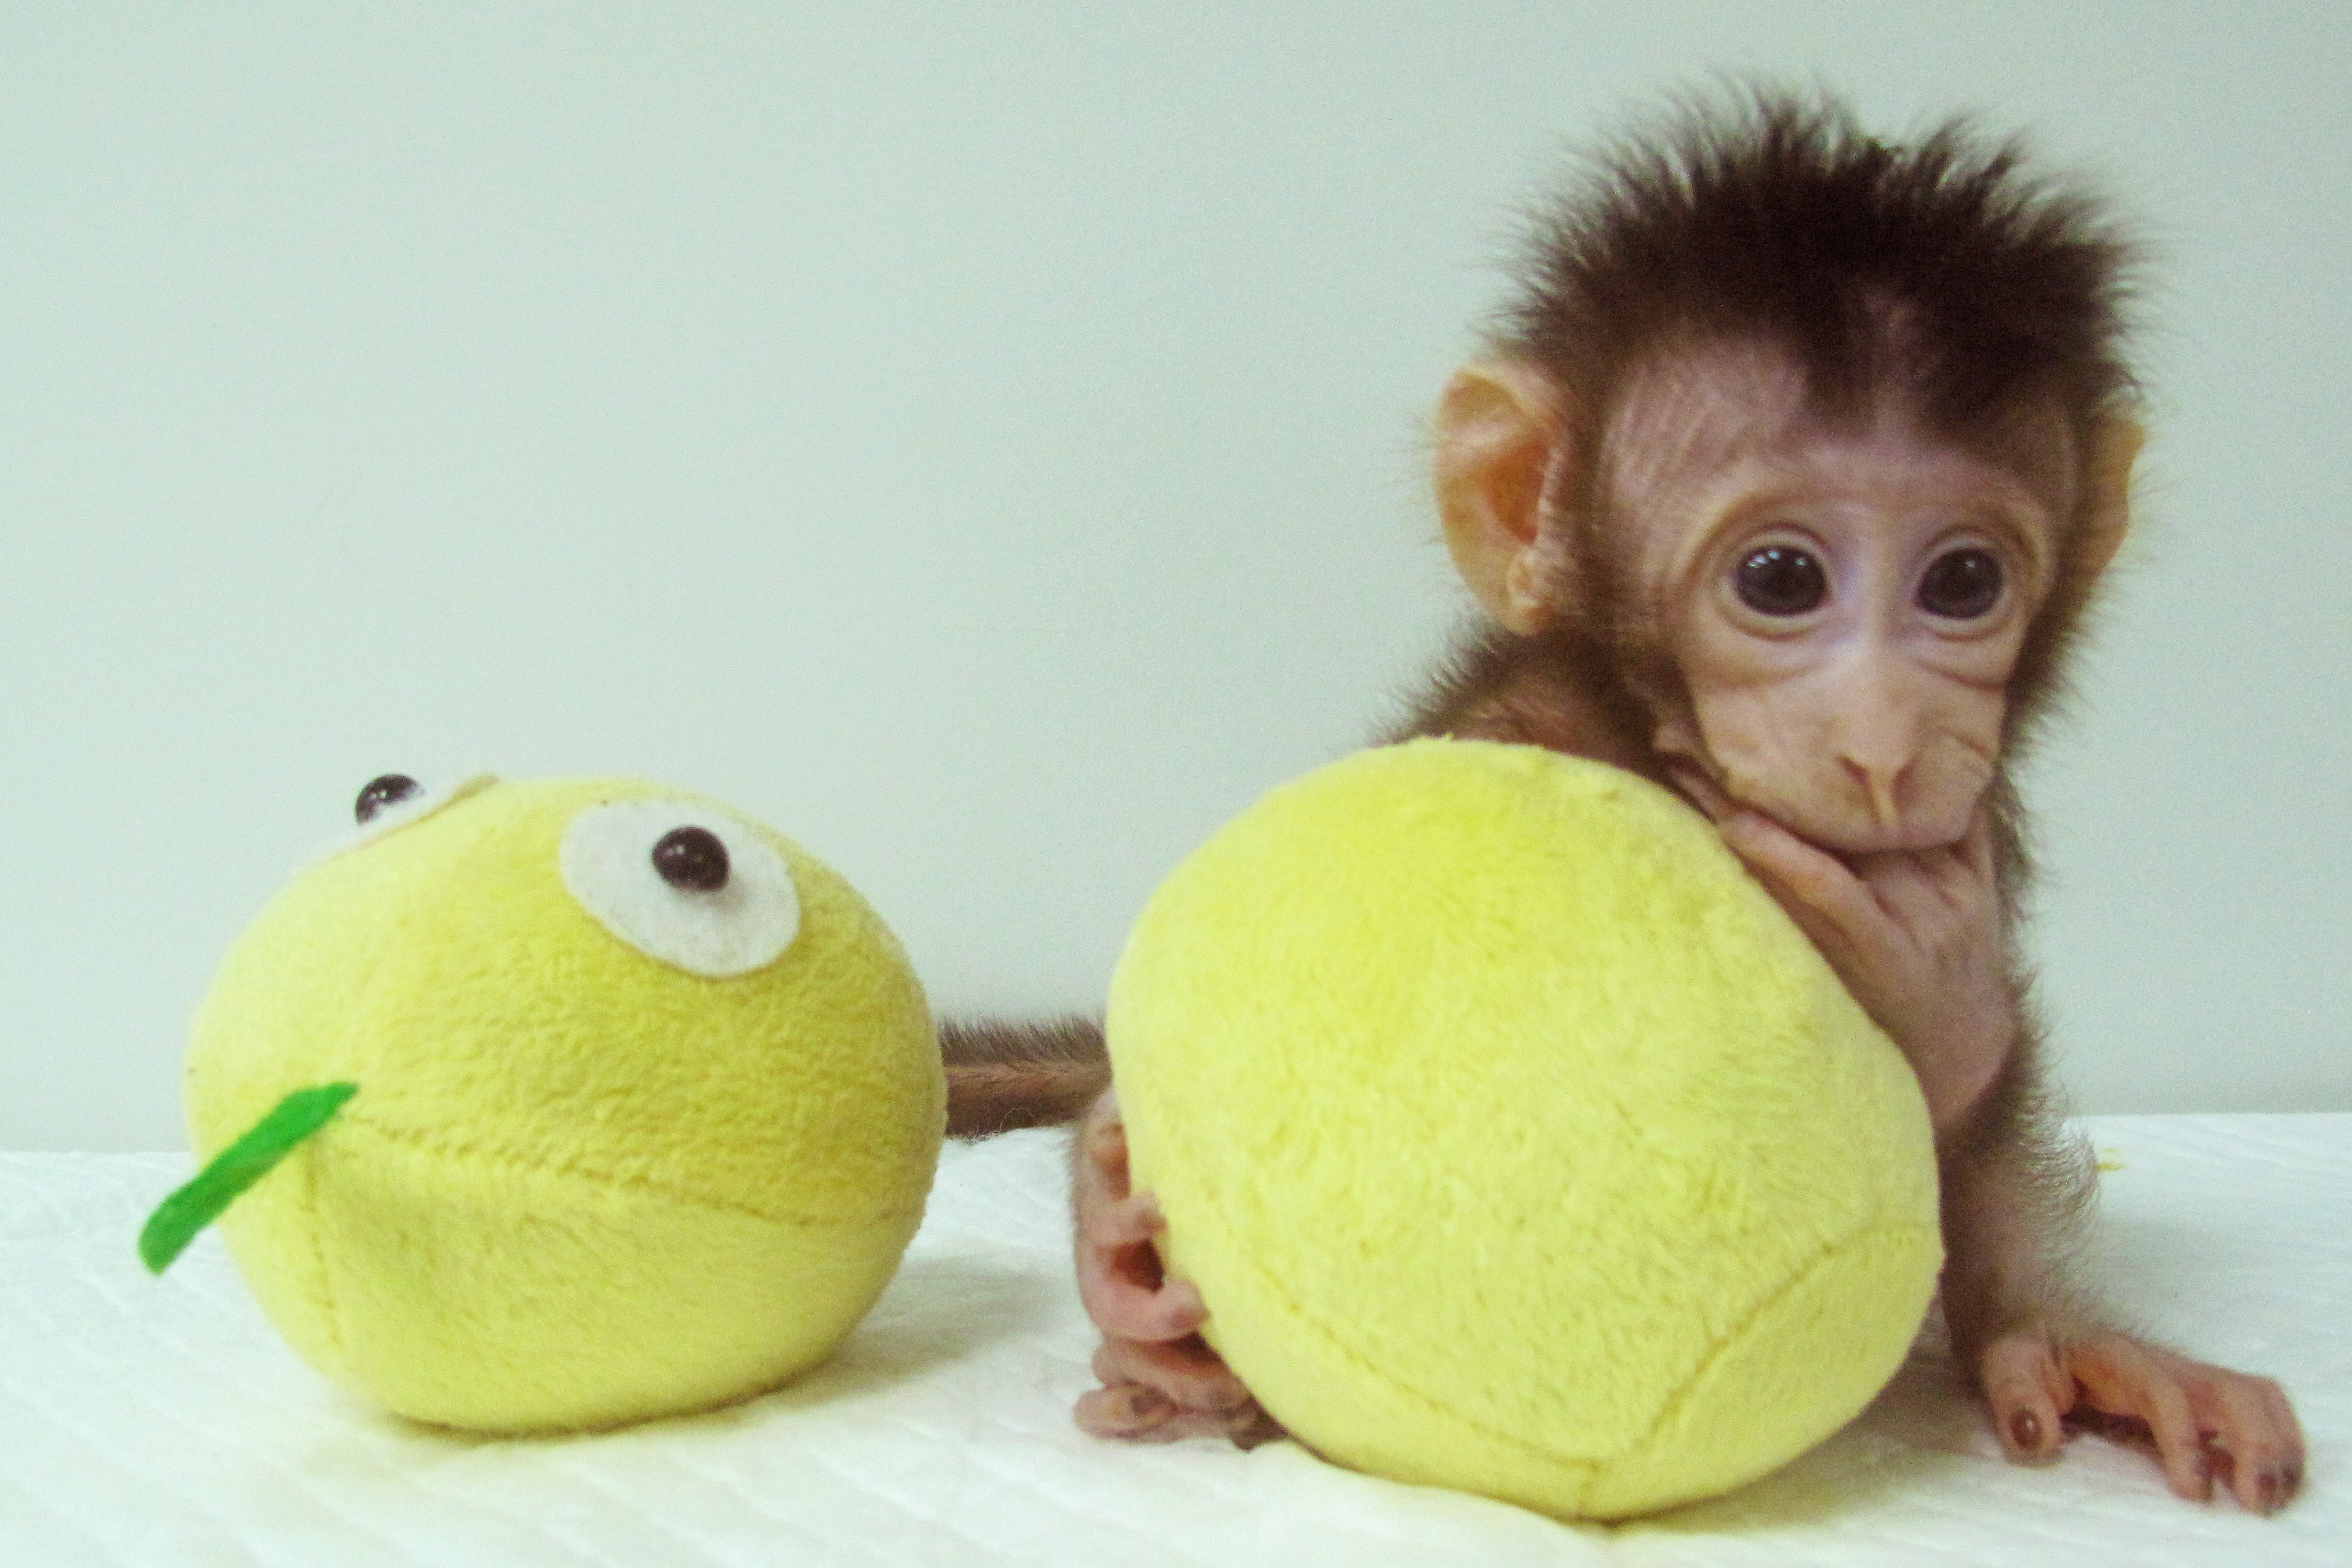 أول عملية استنساخ لقرد باستخدام تقنية النعجة دوللي للع لم